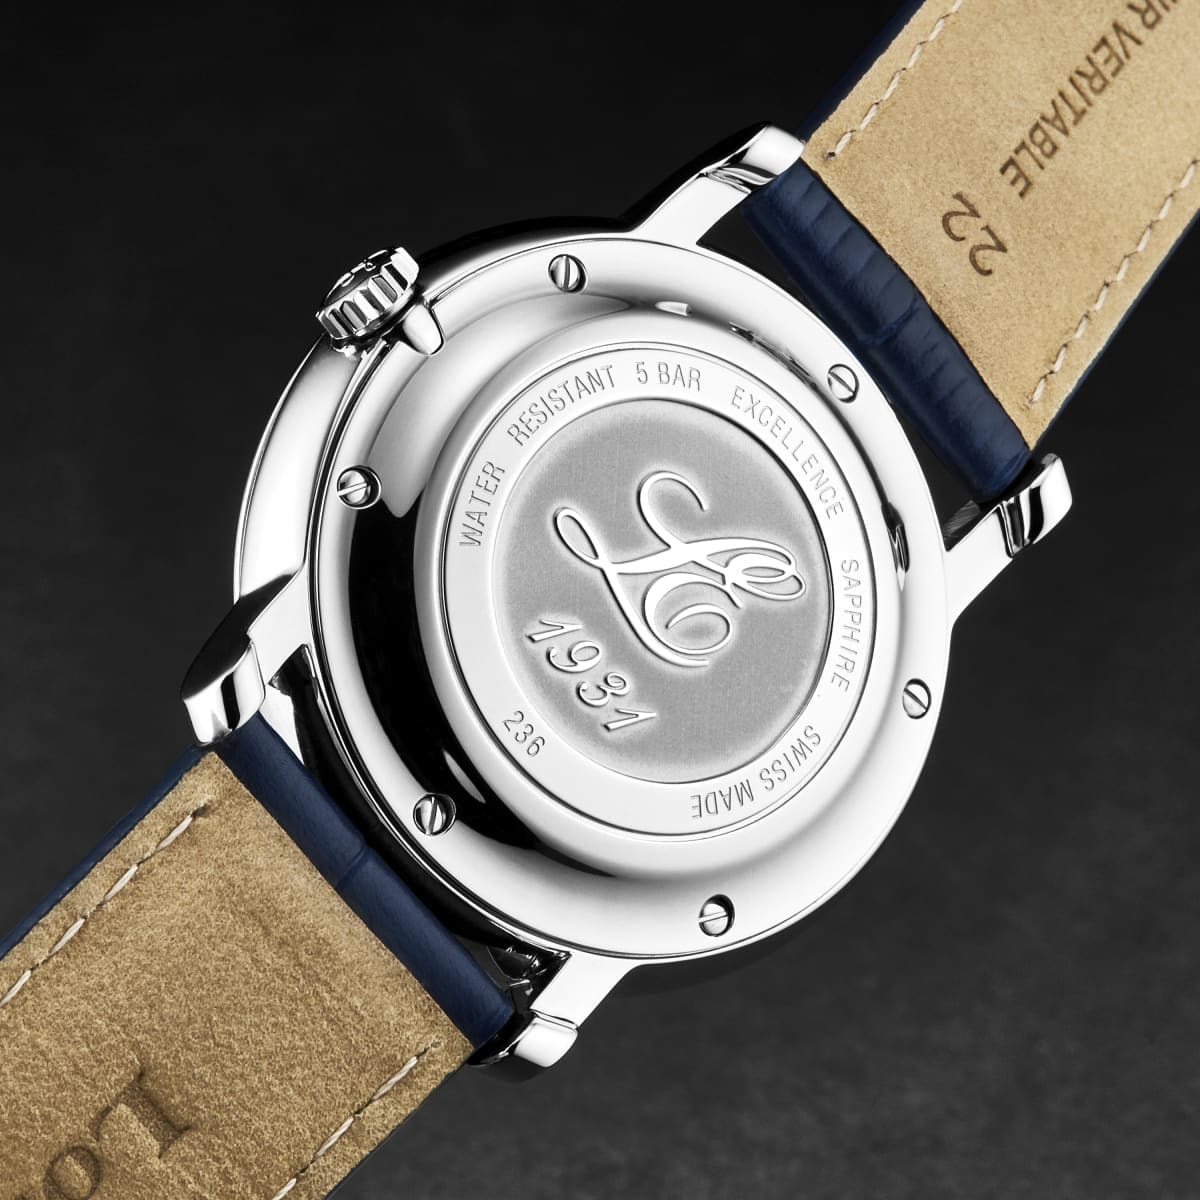 Louis Erard Men’s ’Le Régulateur’ Blue Dial Leather Strap Automatic Watch 86236AA25.BDC555 - On sale